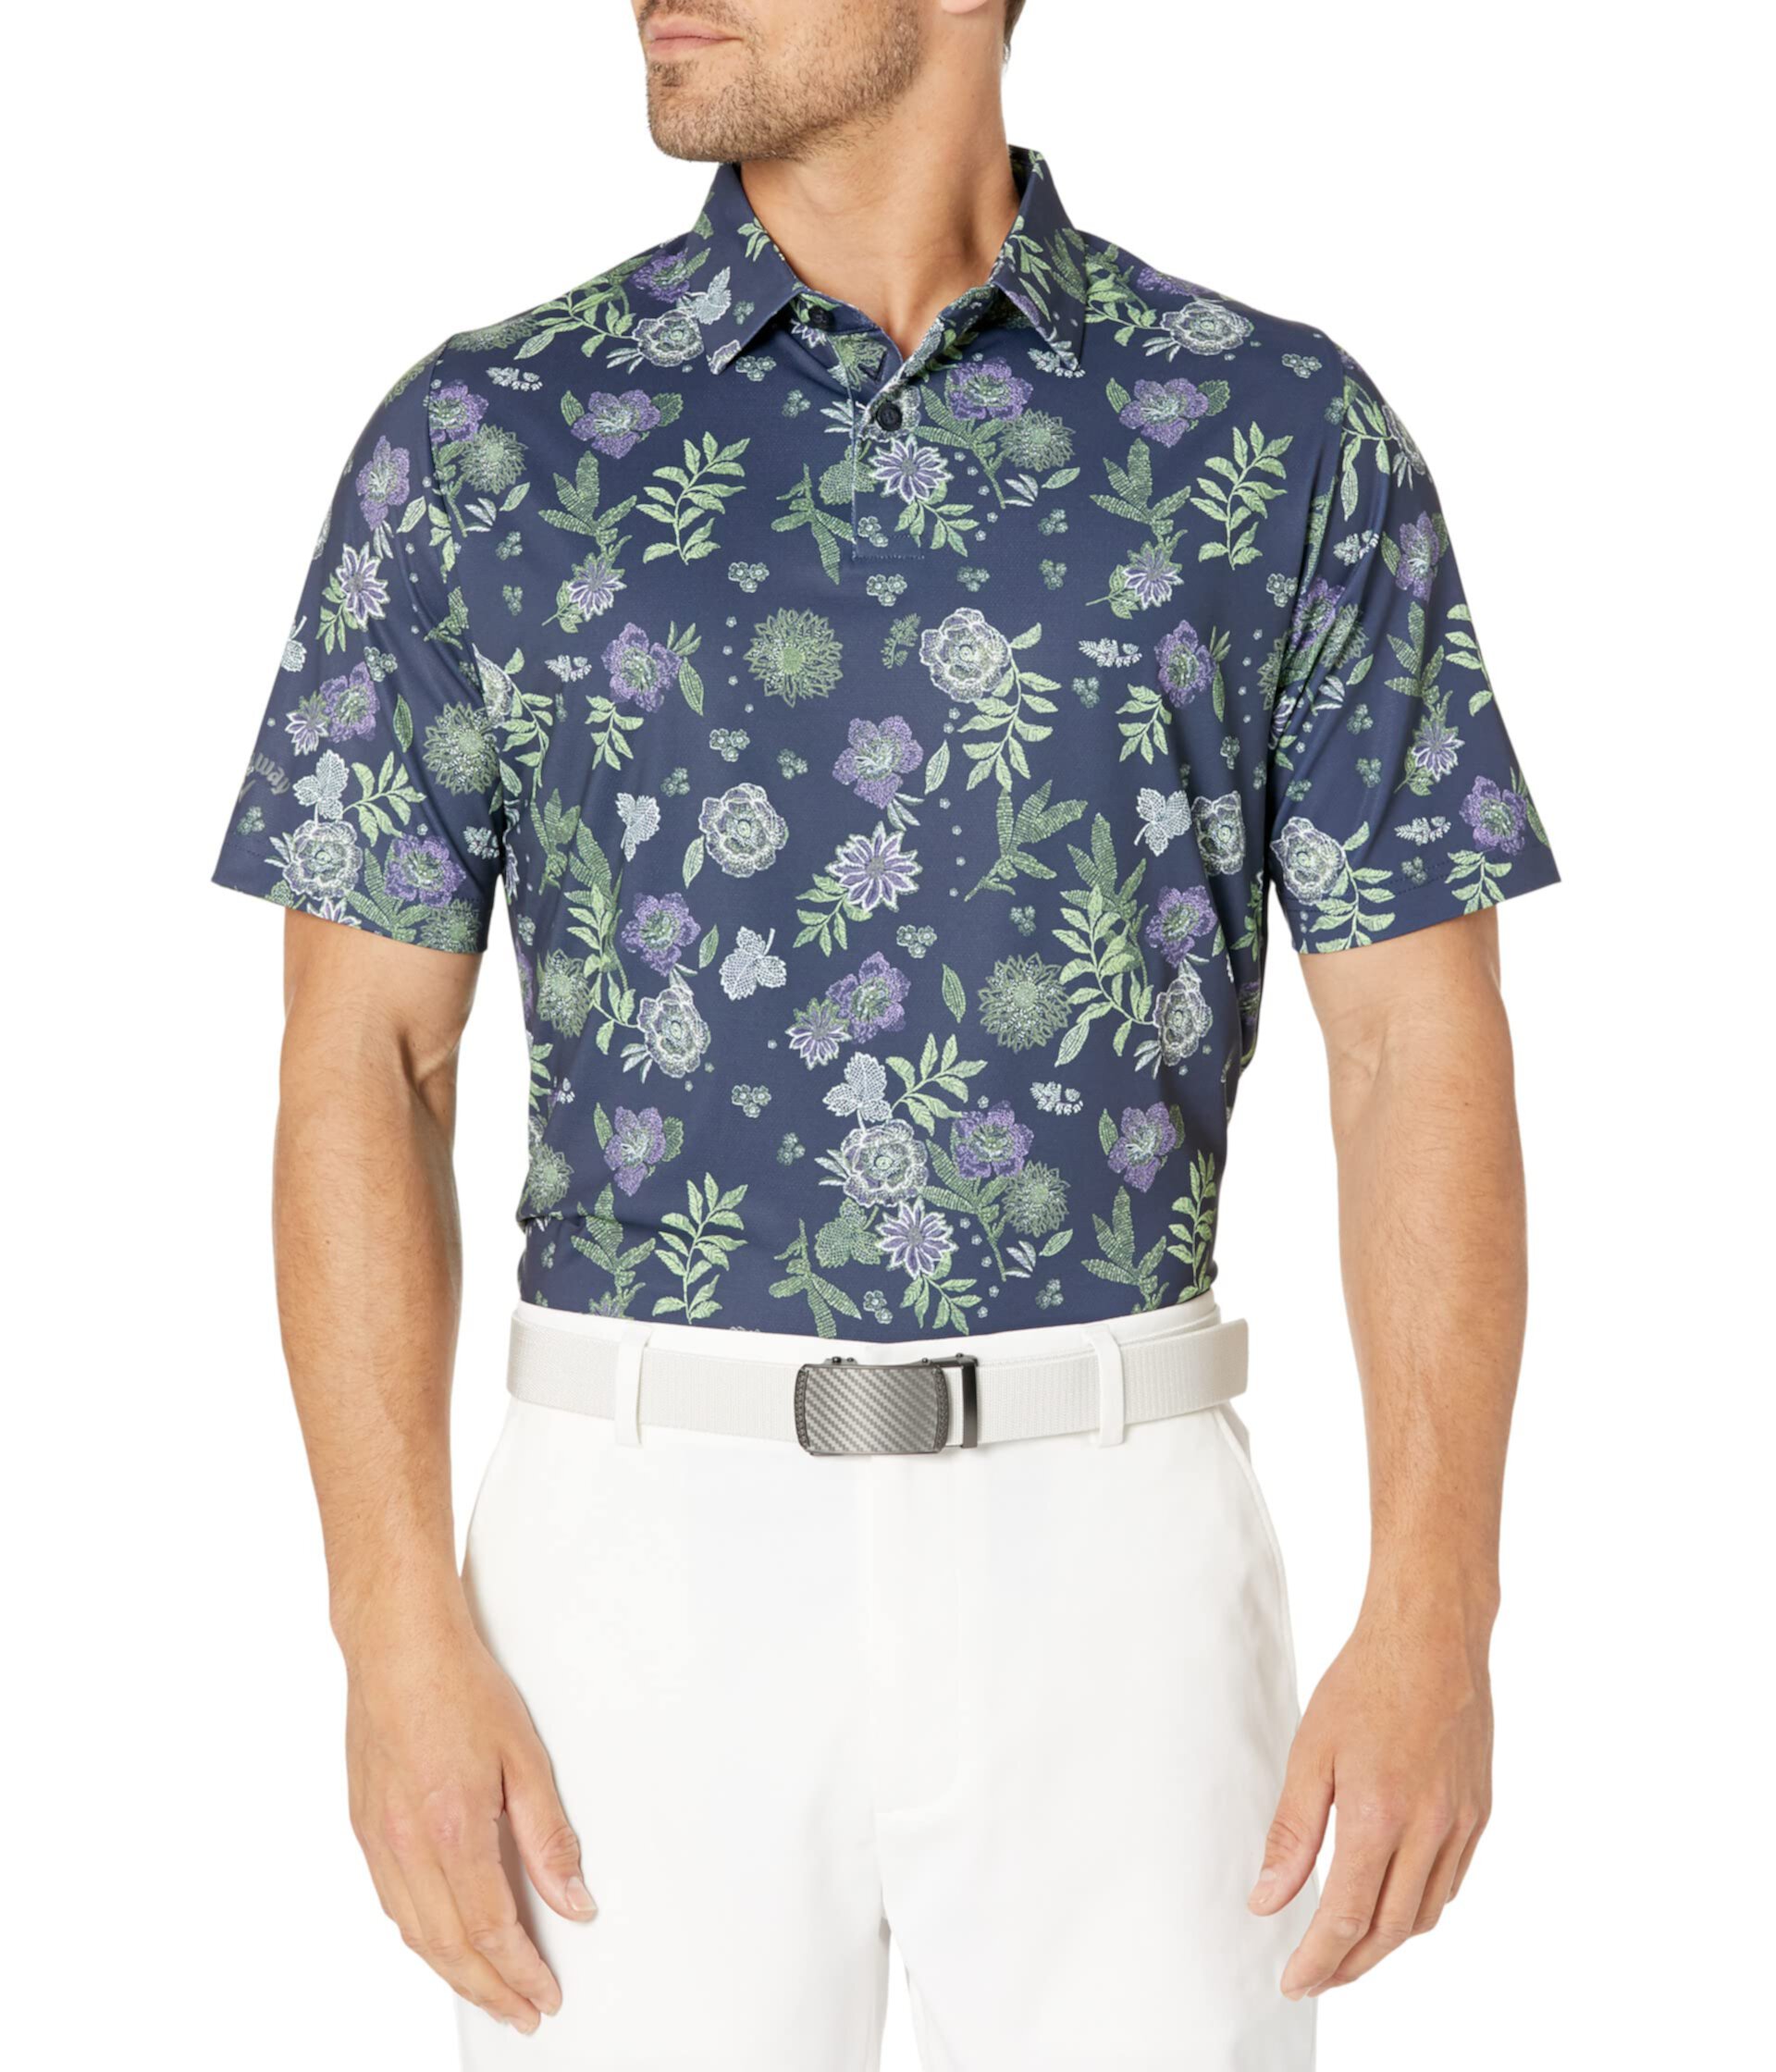 Мужская рубашка-поло с цветочным принтом Callaway Callaway